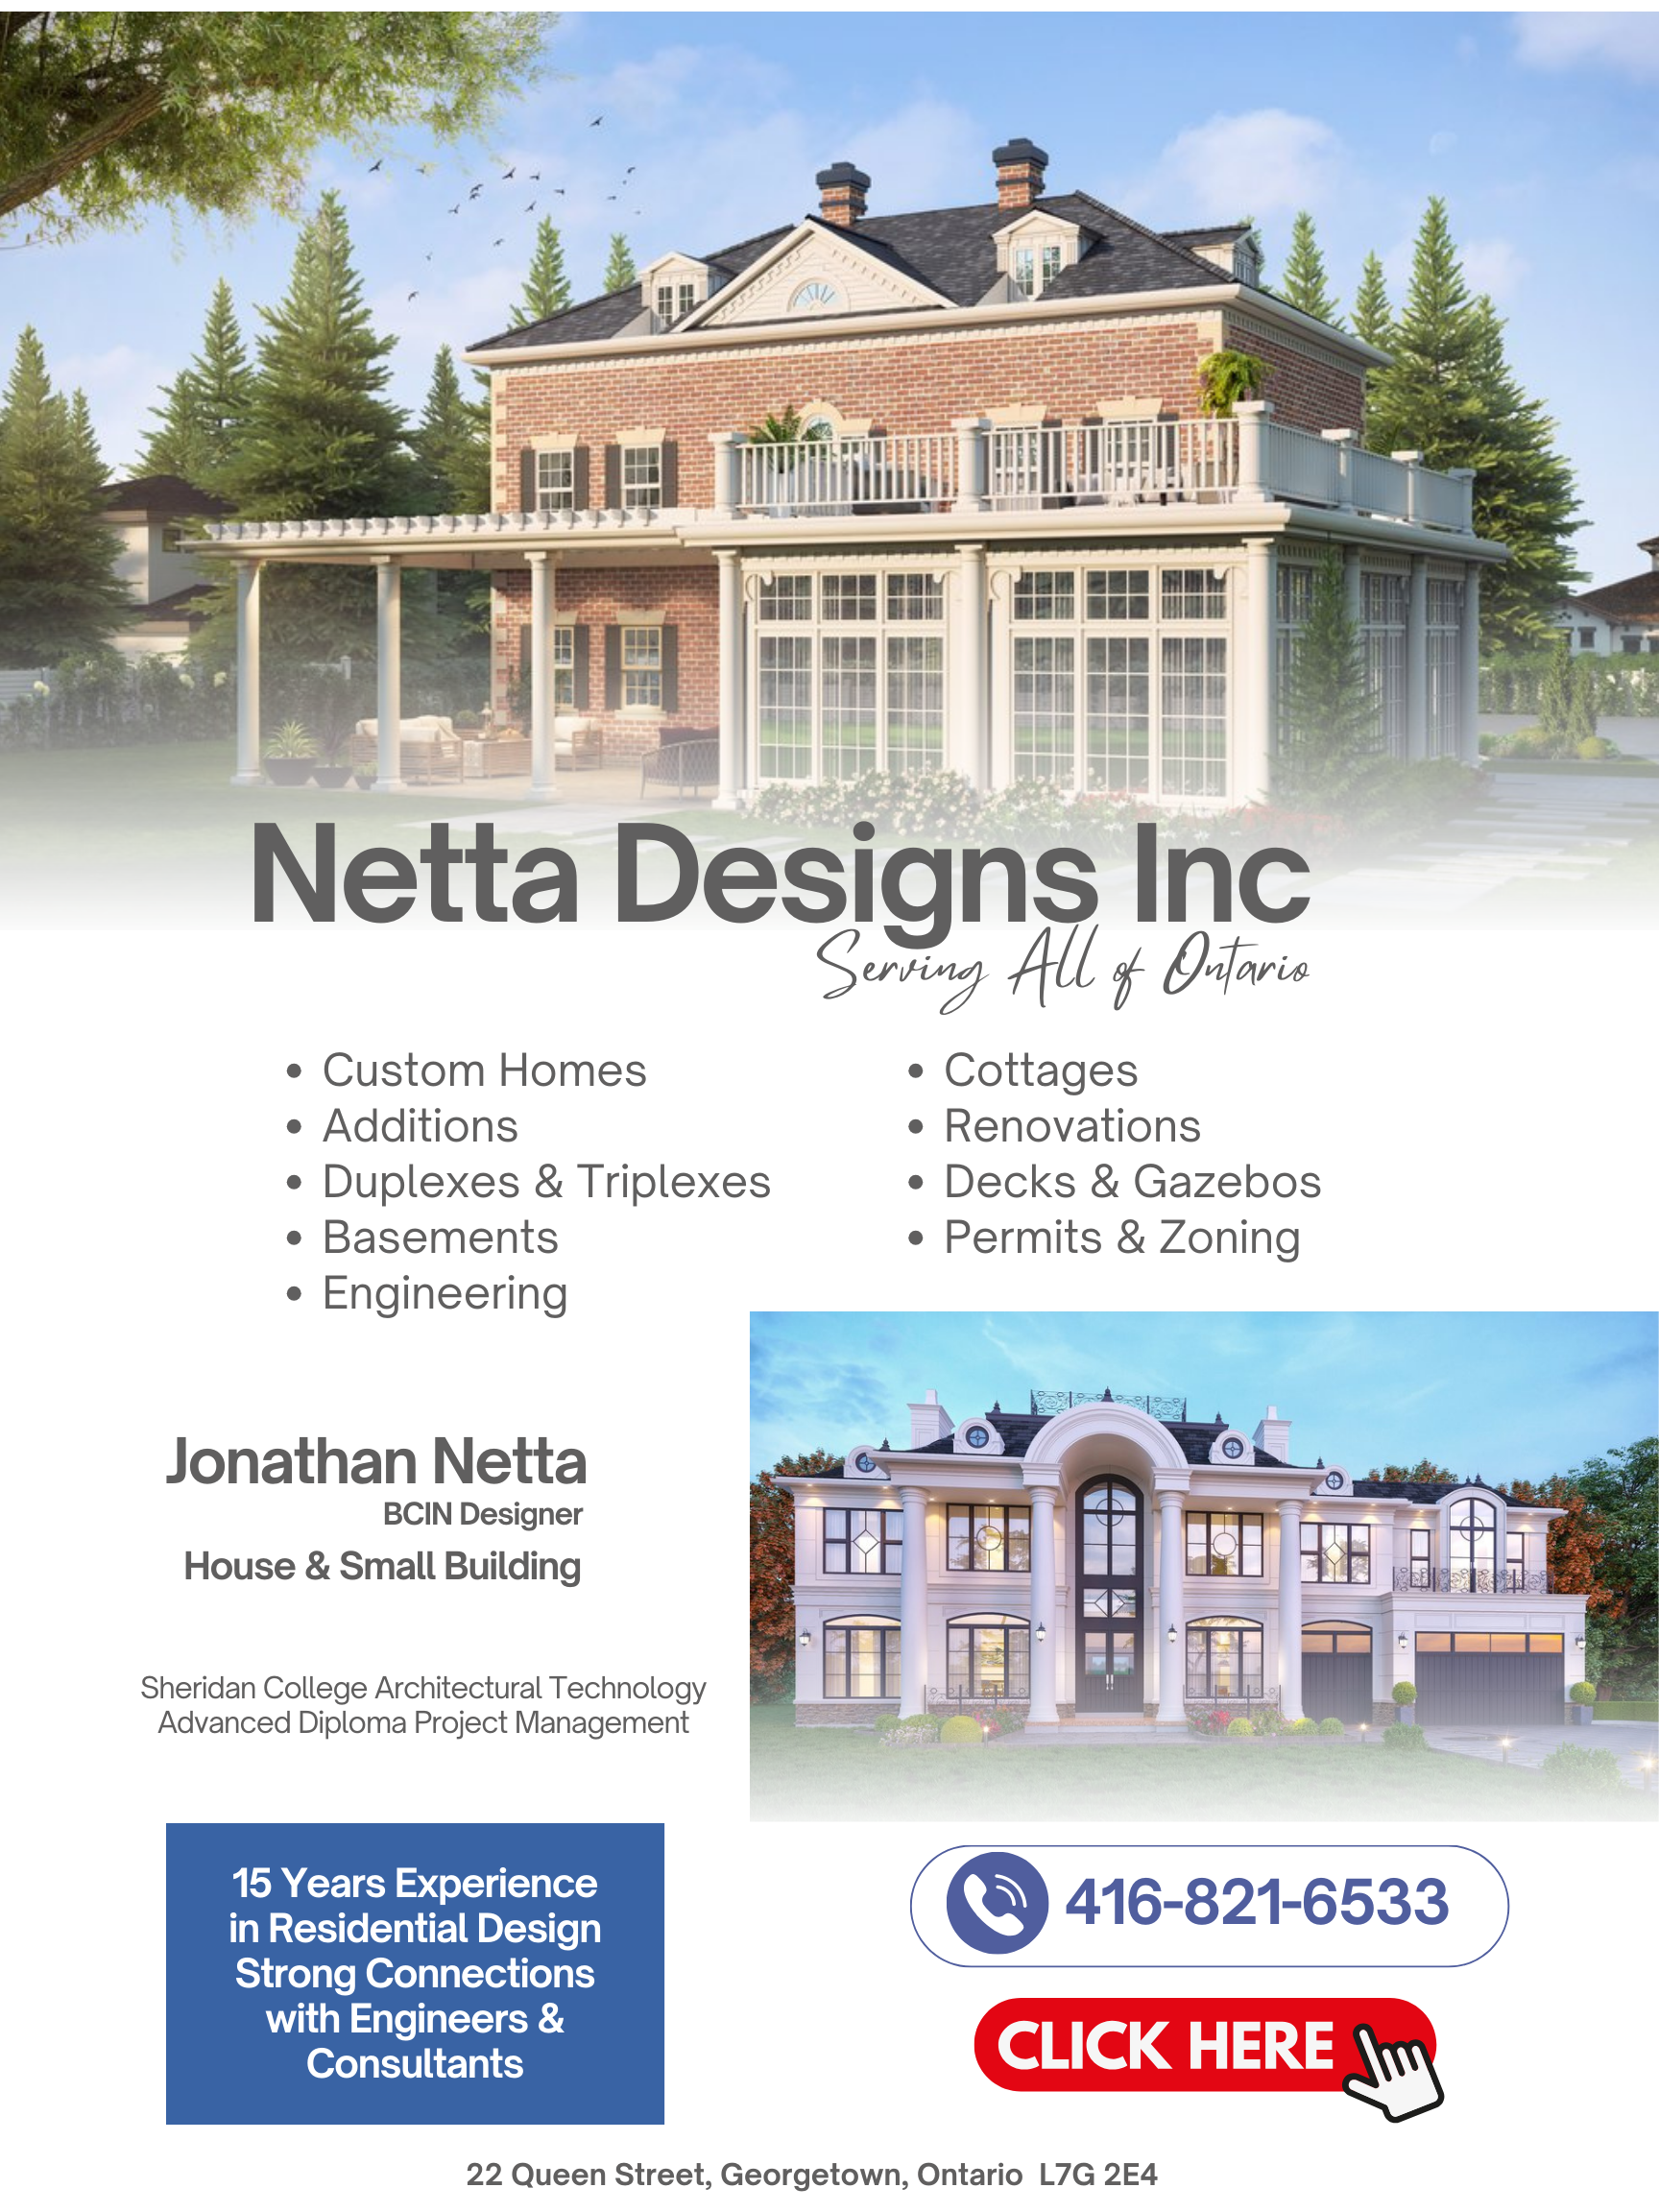 Visit Netta Designs